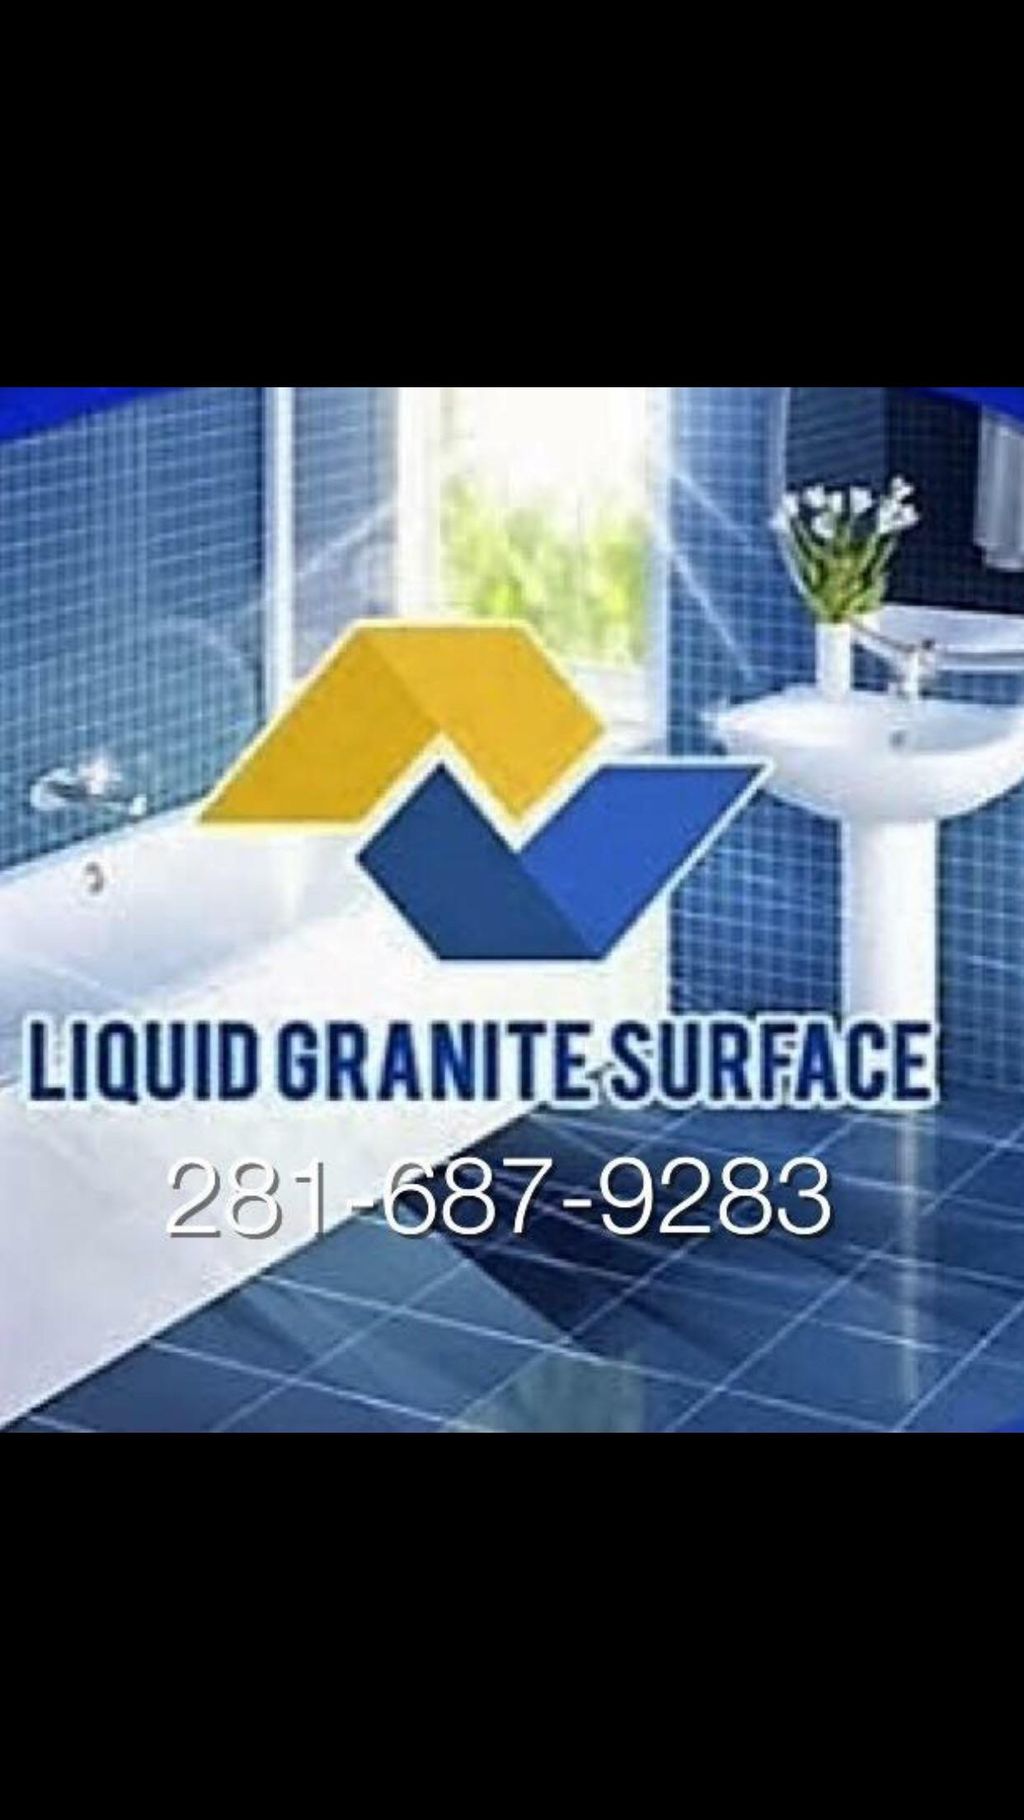 Liquid Granite Surface